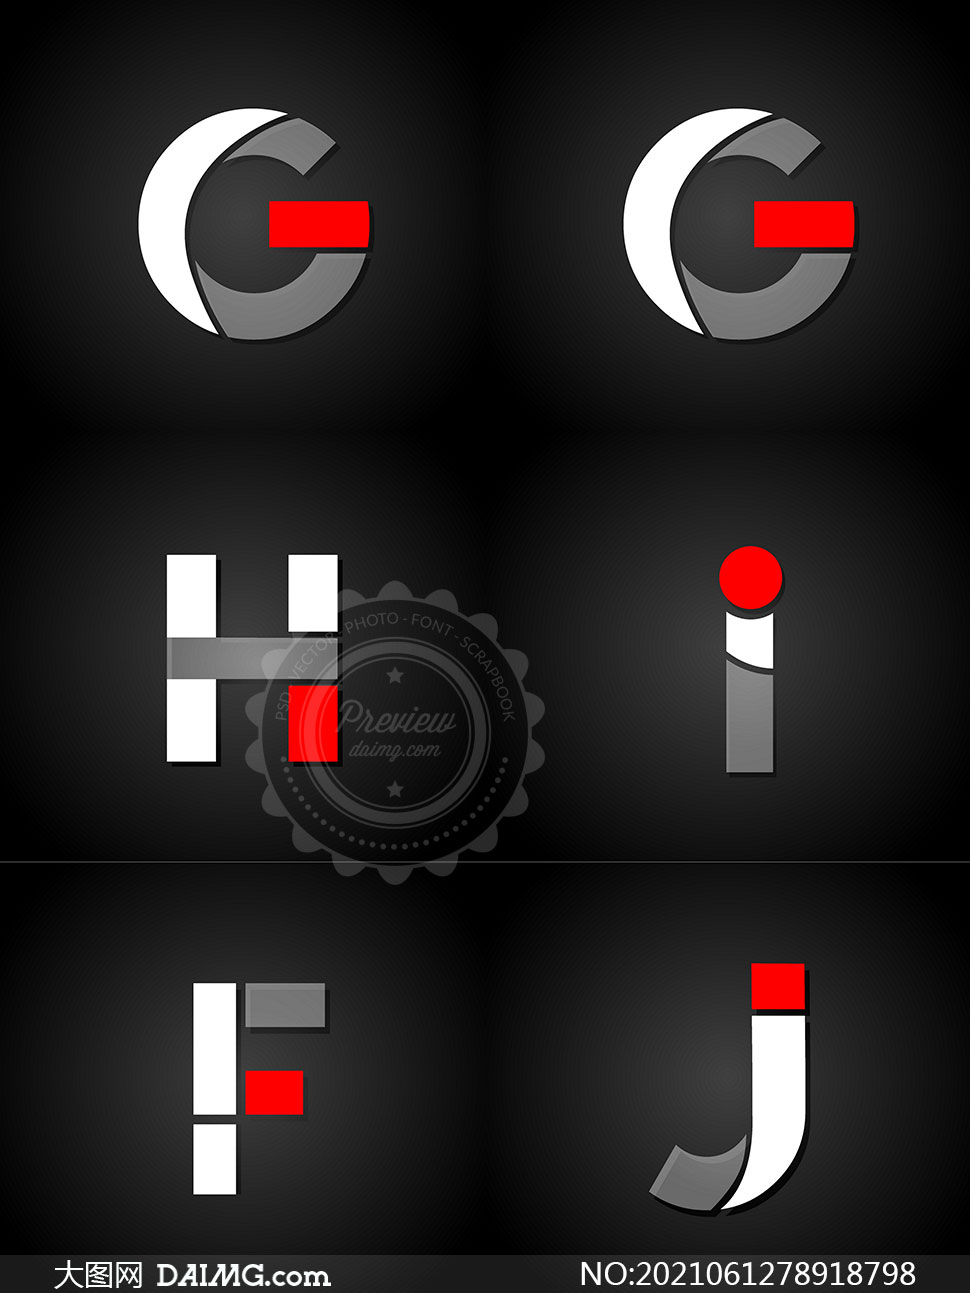 创意英文字母标志设计矢量素材集v02